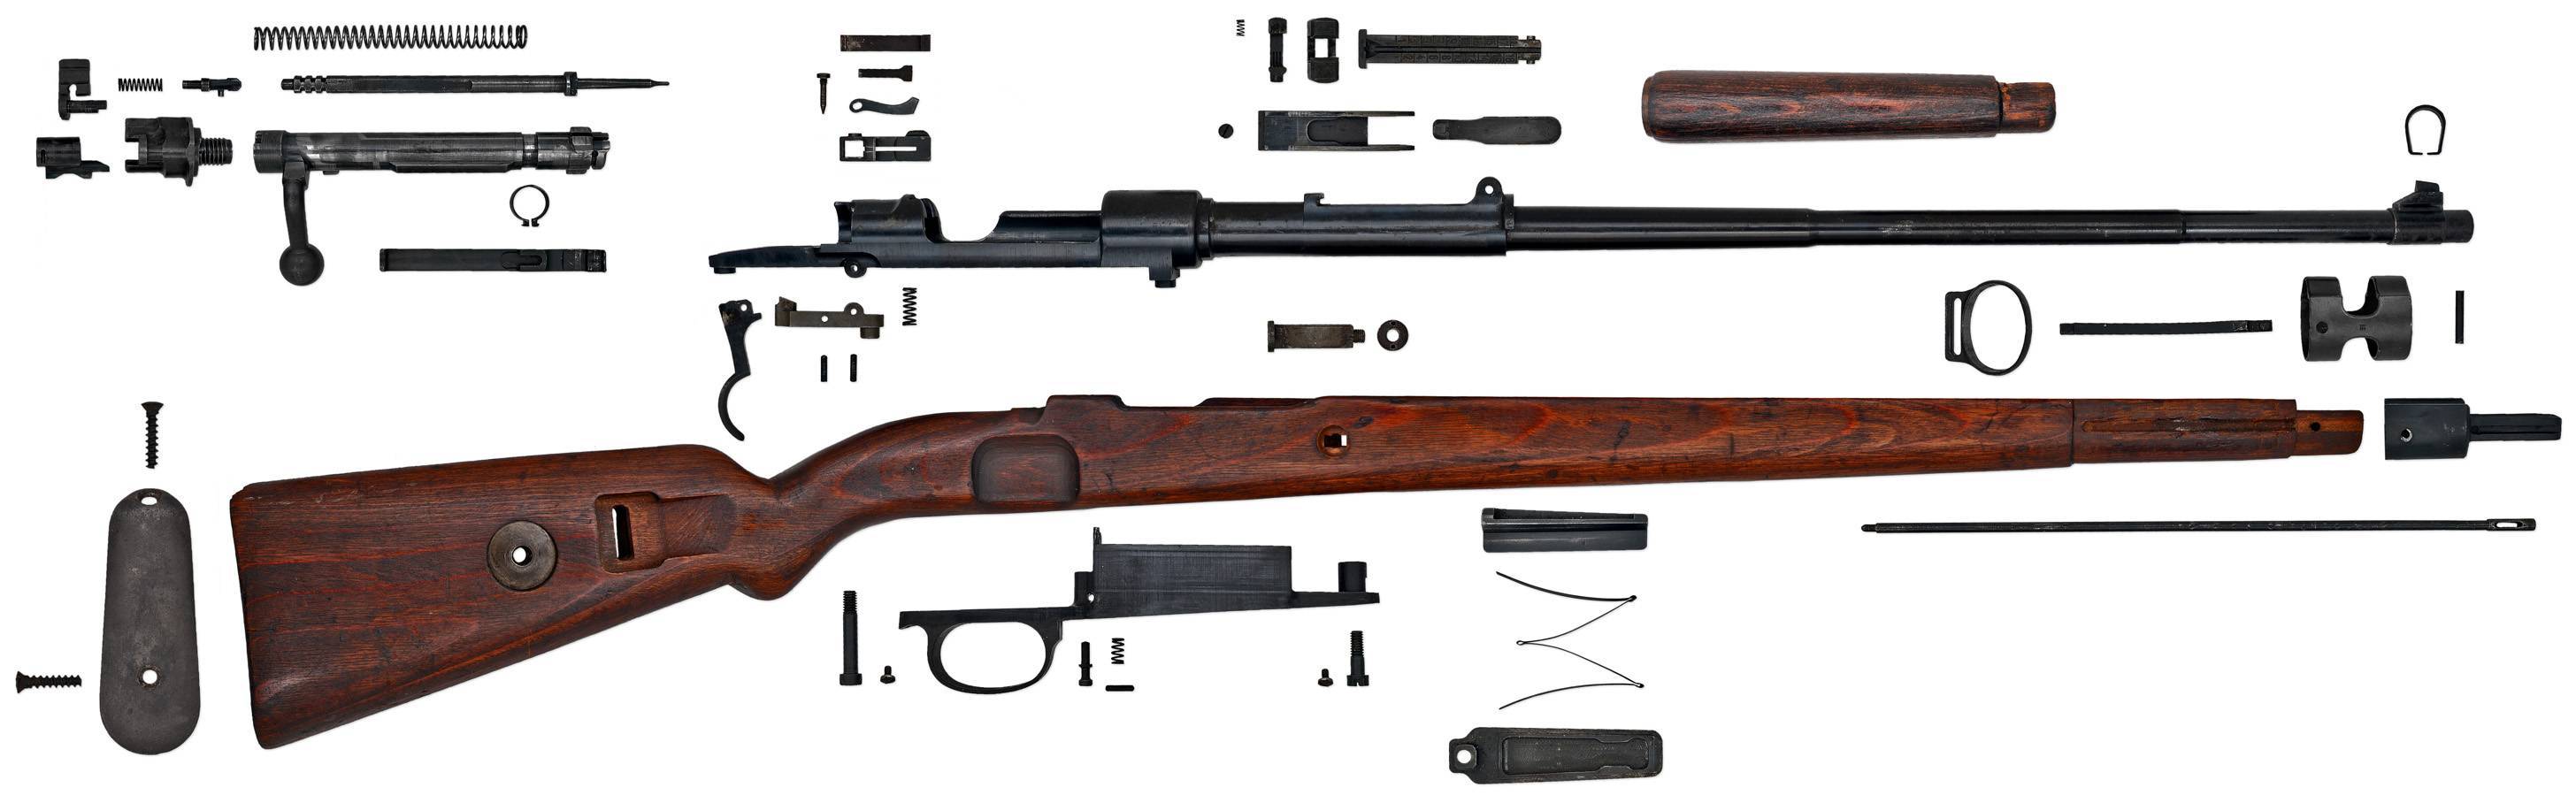 Mauser 98k: история создания, принцип действия, конструктивные особенности и ттх